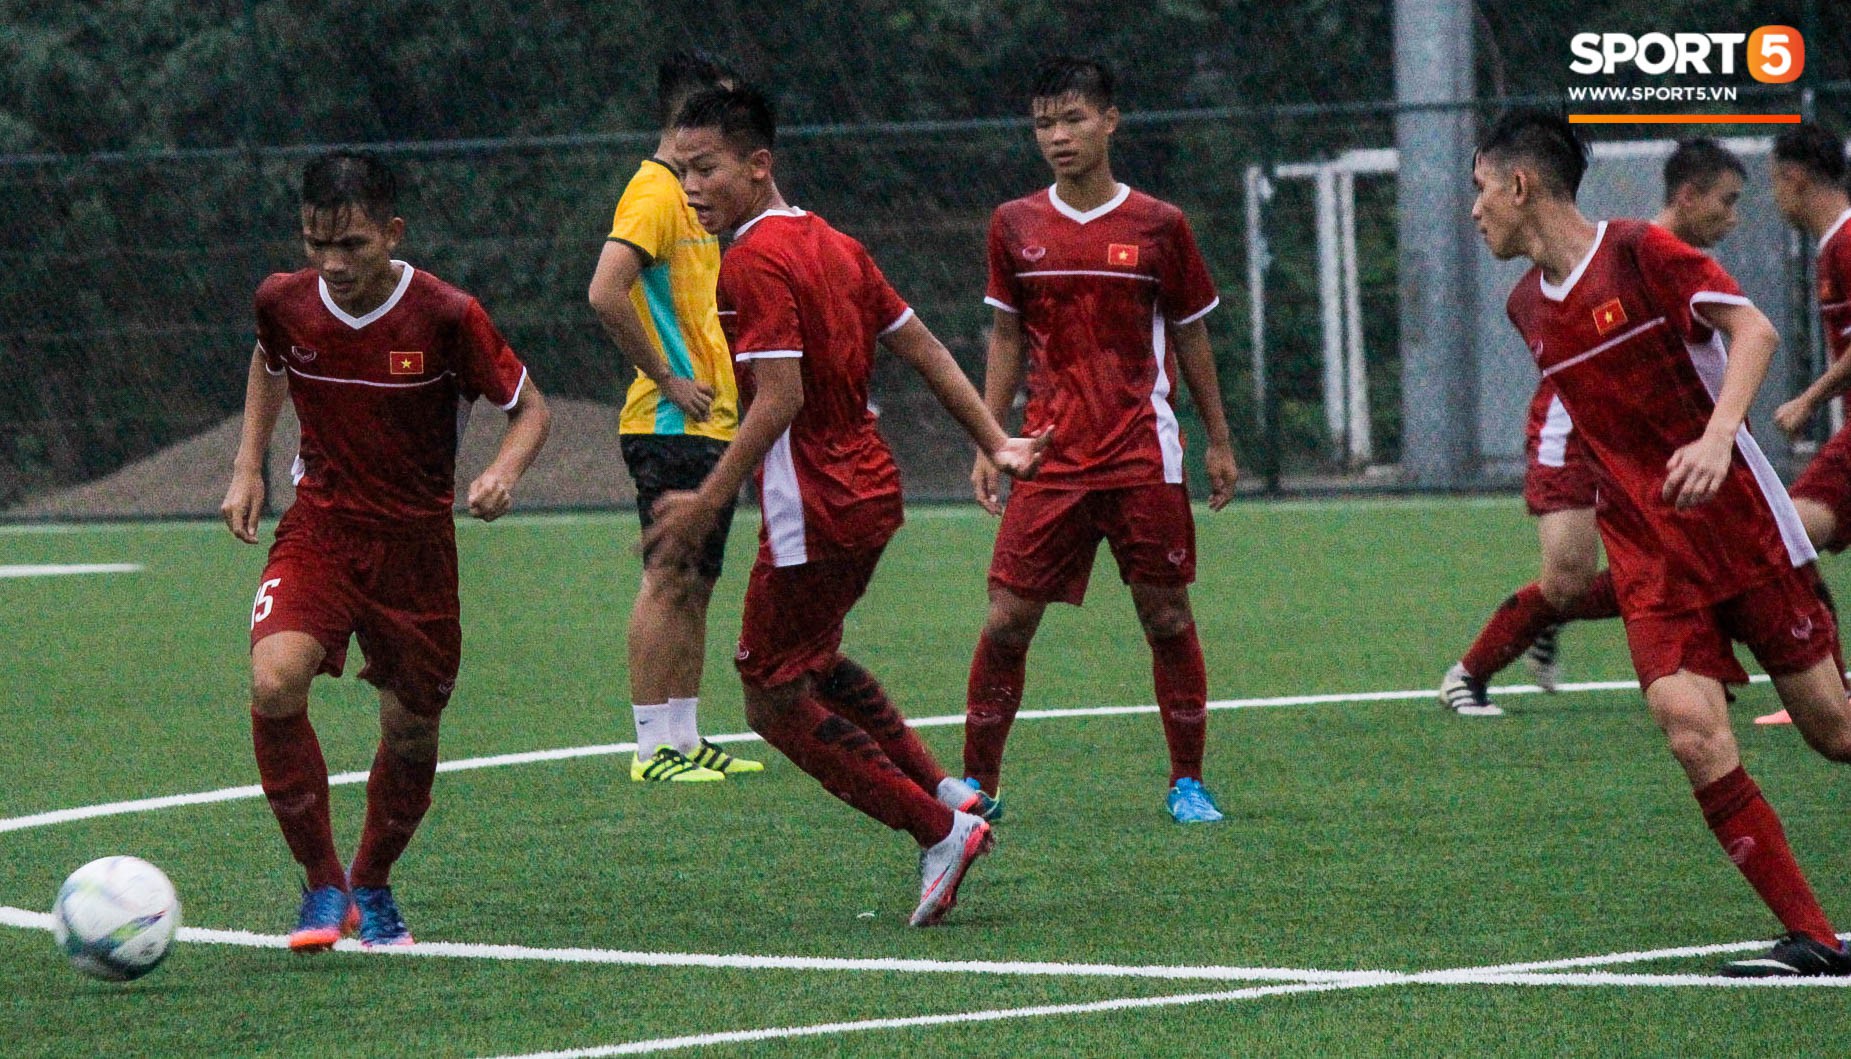 Đội tuyển U16 Việt Nam tập luyện dưới mưa, gấp rút chuẩn bị cho giải Đông Nam Á - Ảnh 2.